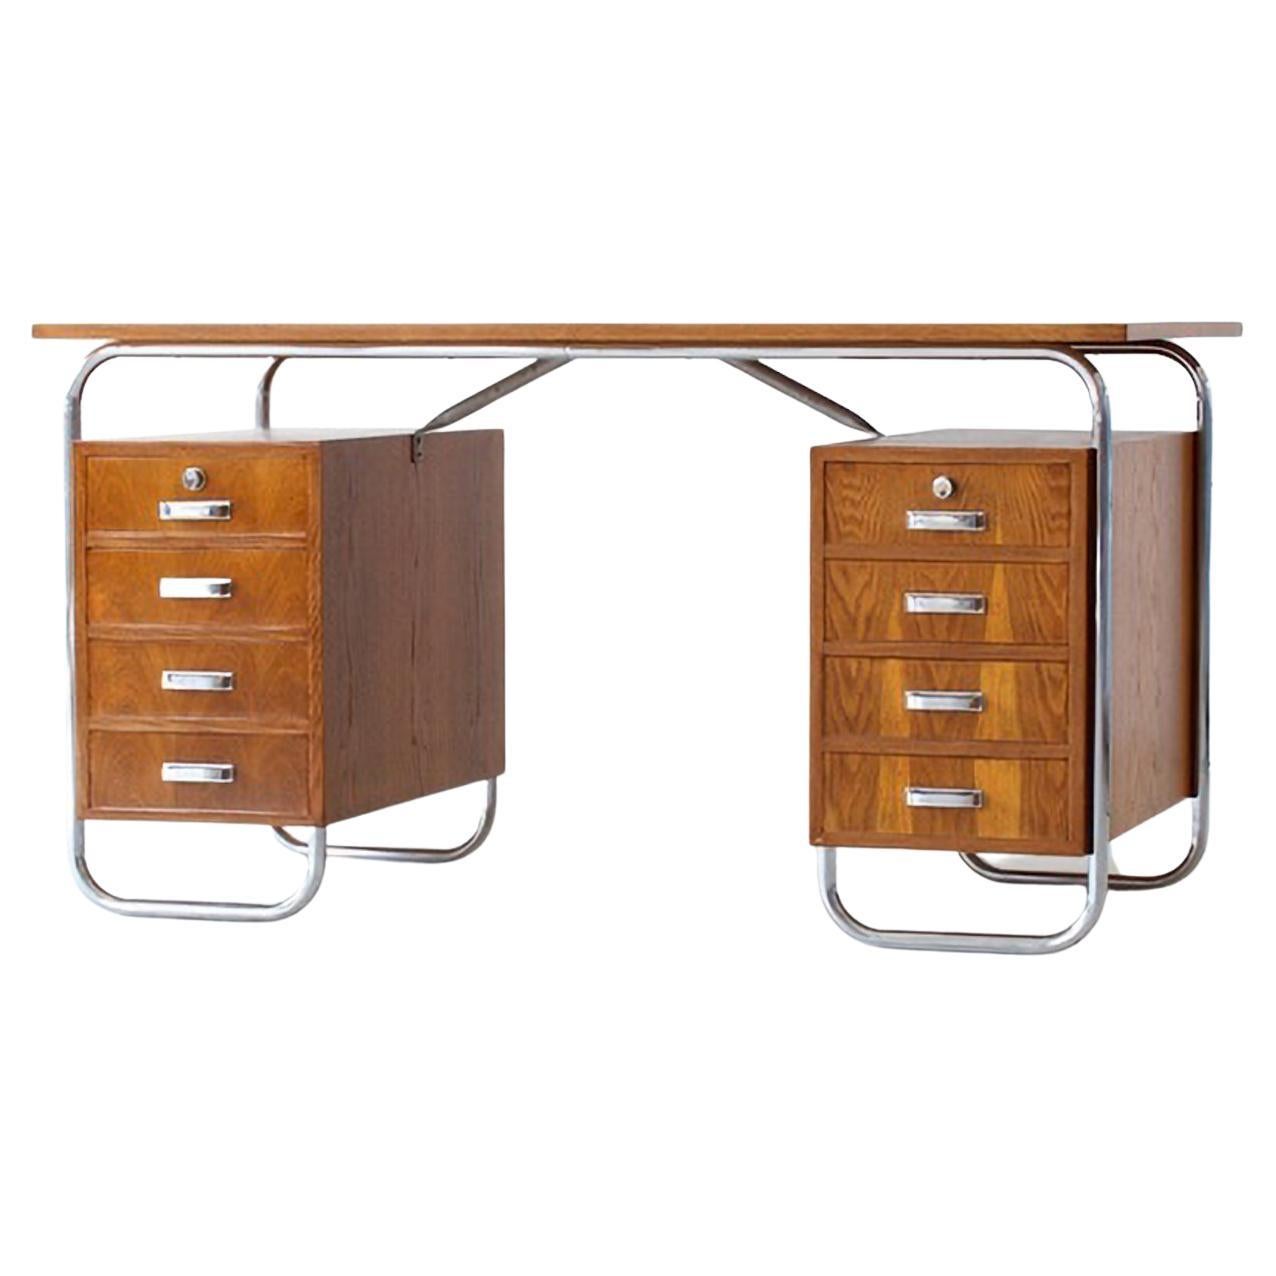 Modernistischer Schreibtisch aus Stahlrohr mit 2 Schubladen, verchromtes Metall, Eichenholzfurnier